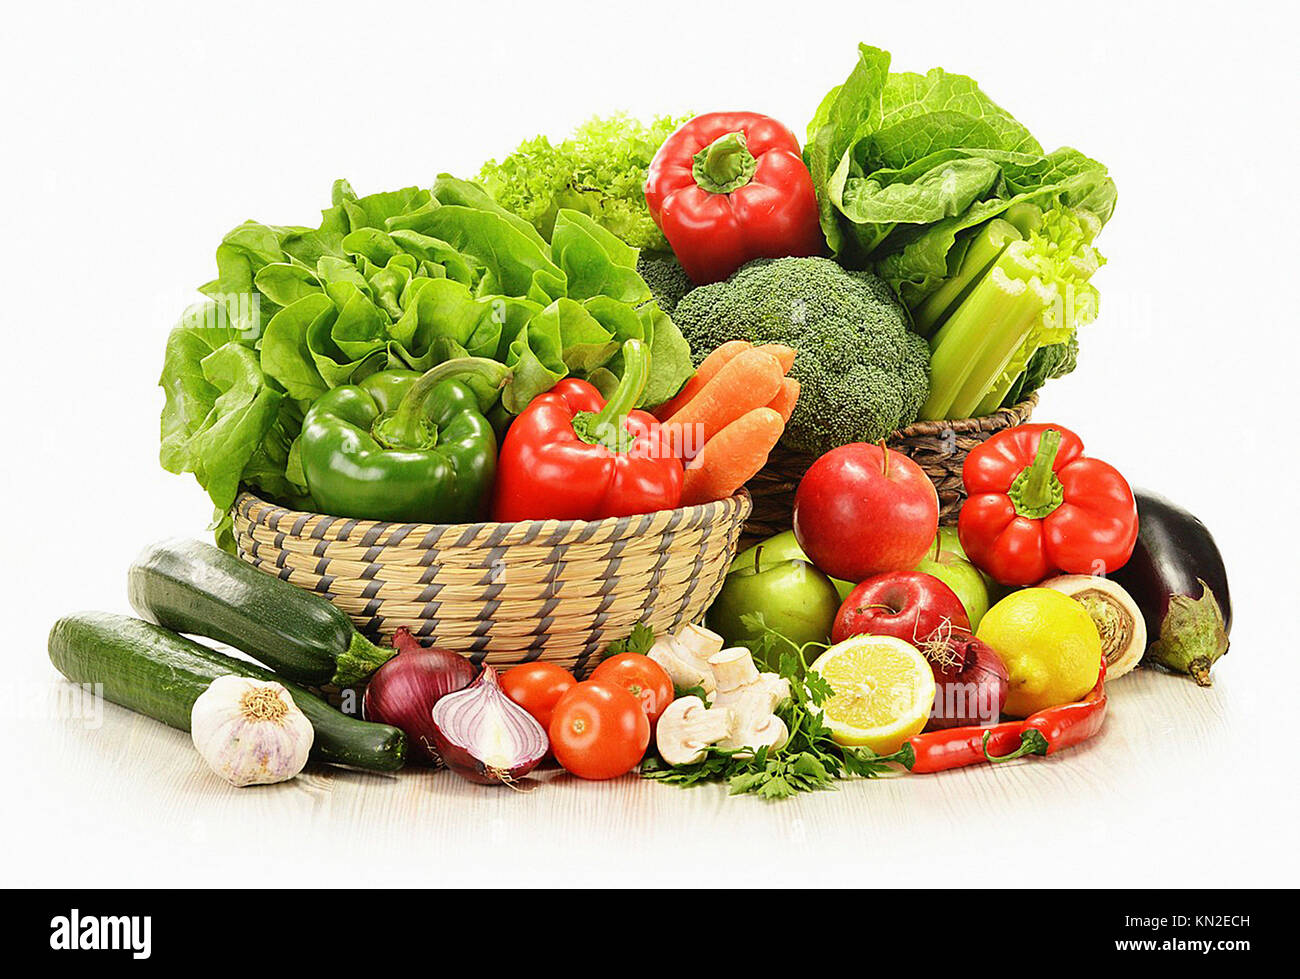 Овощи и фрукты являются источником. Овощи и фрукты. Овощи на белом фоне. Овощи и фрукты на белом фоне. Сырые овощи и фрукты.